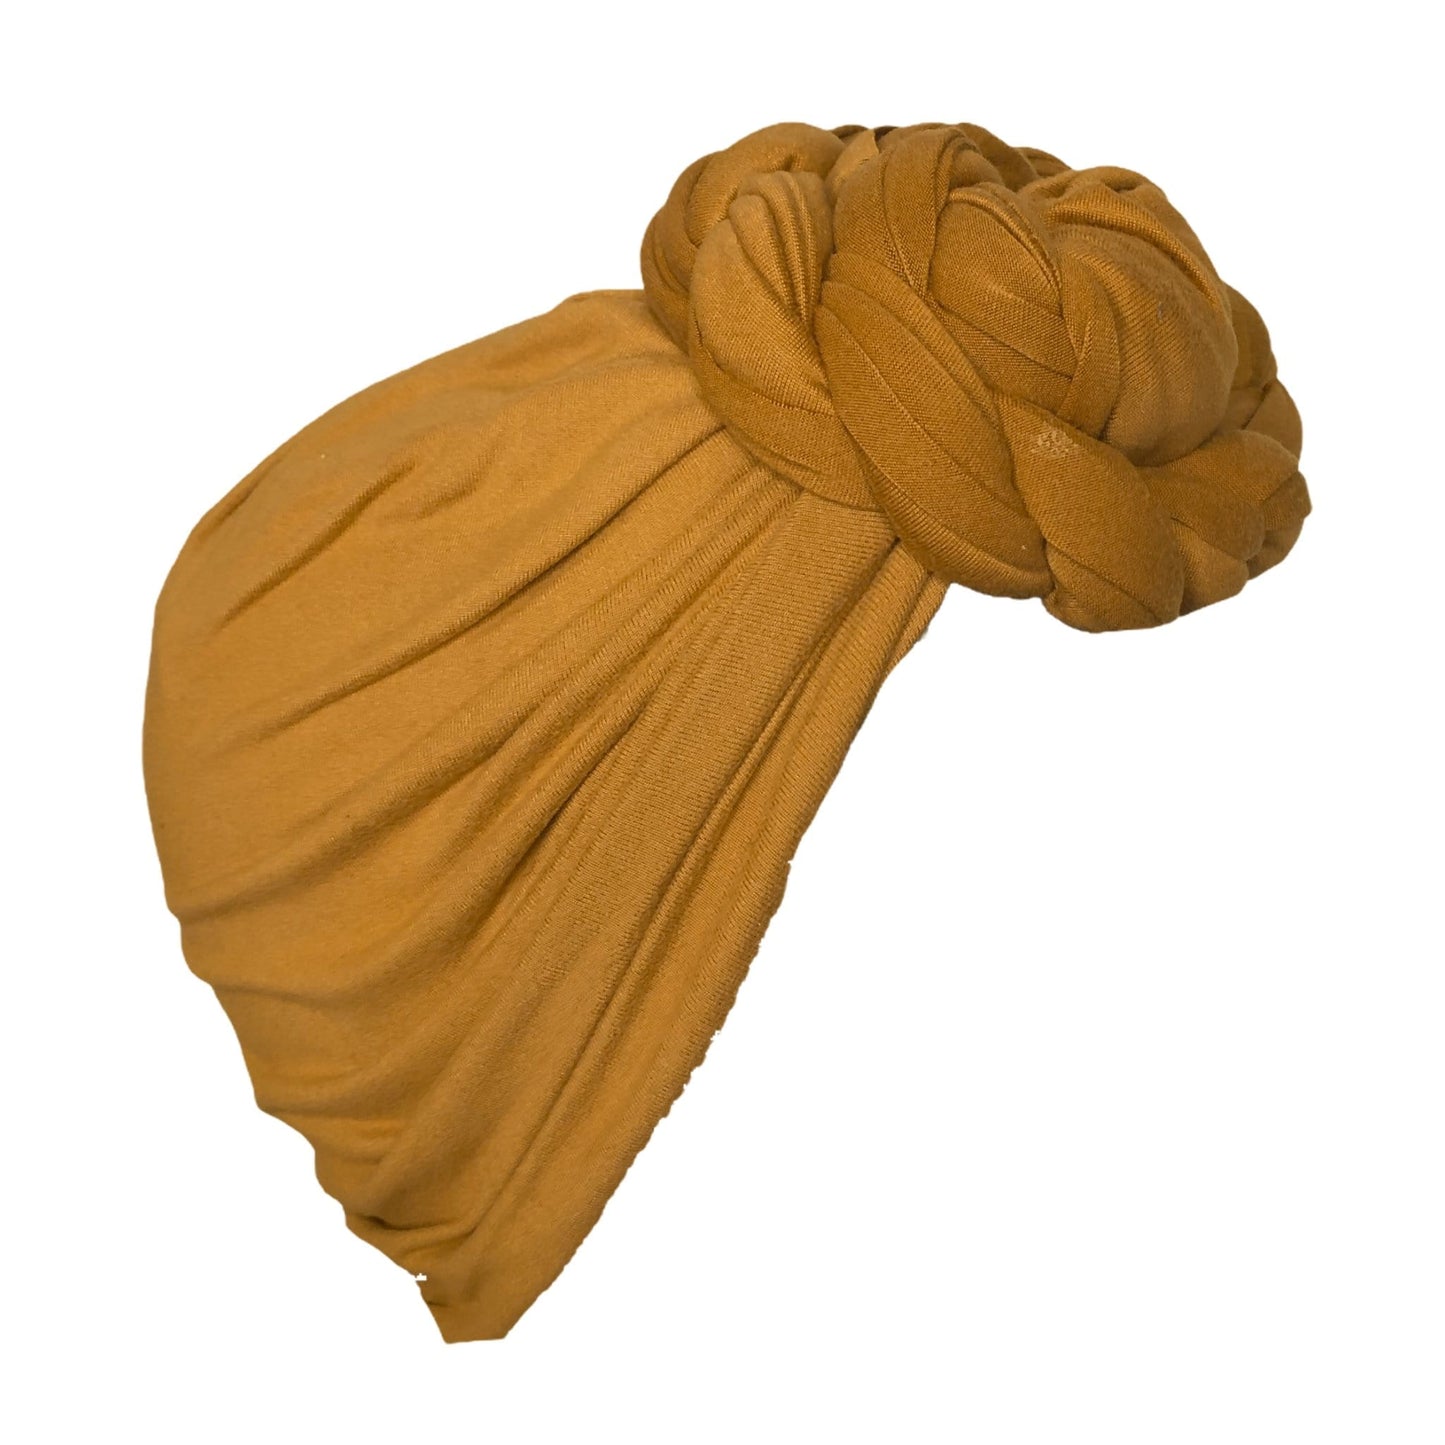 Pre-tied Headwrap Turban: Dark Mustard - Shop Sweet EMbraCe